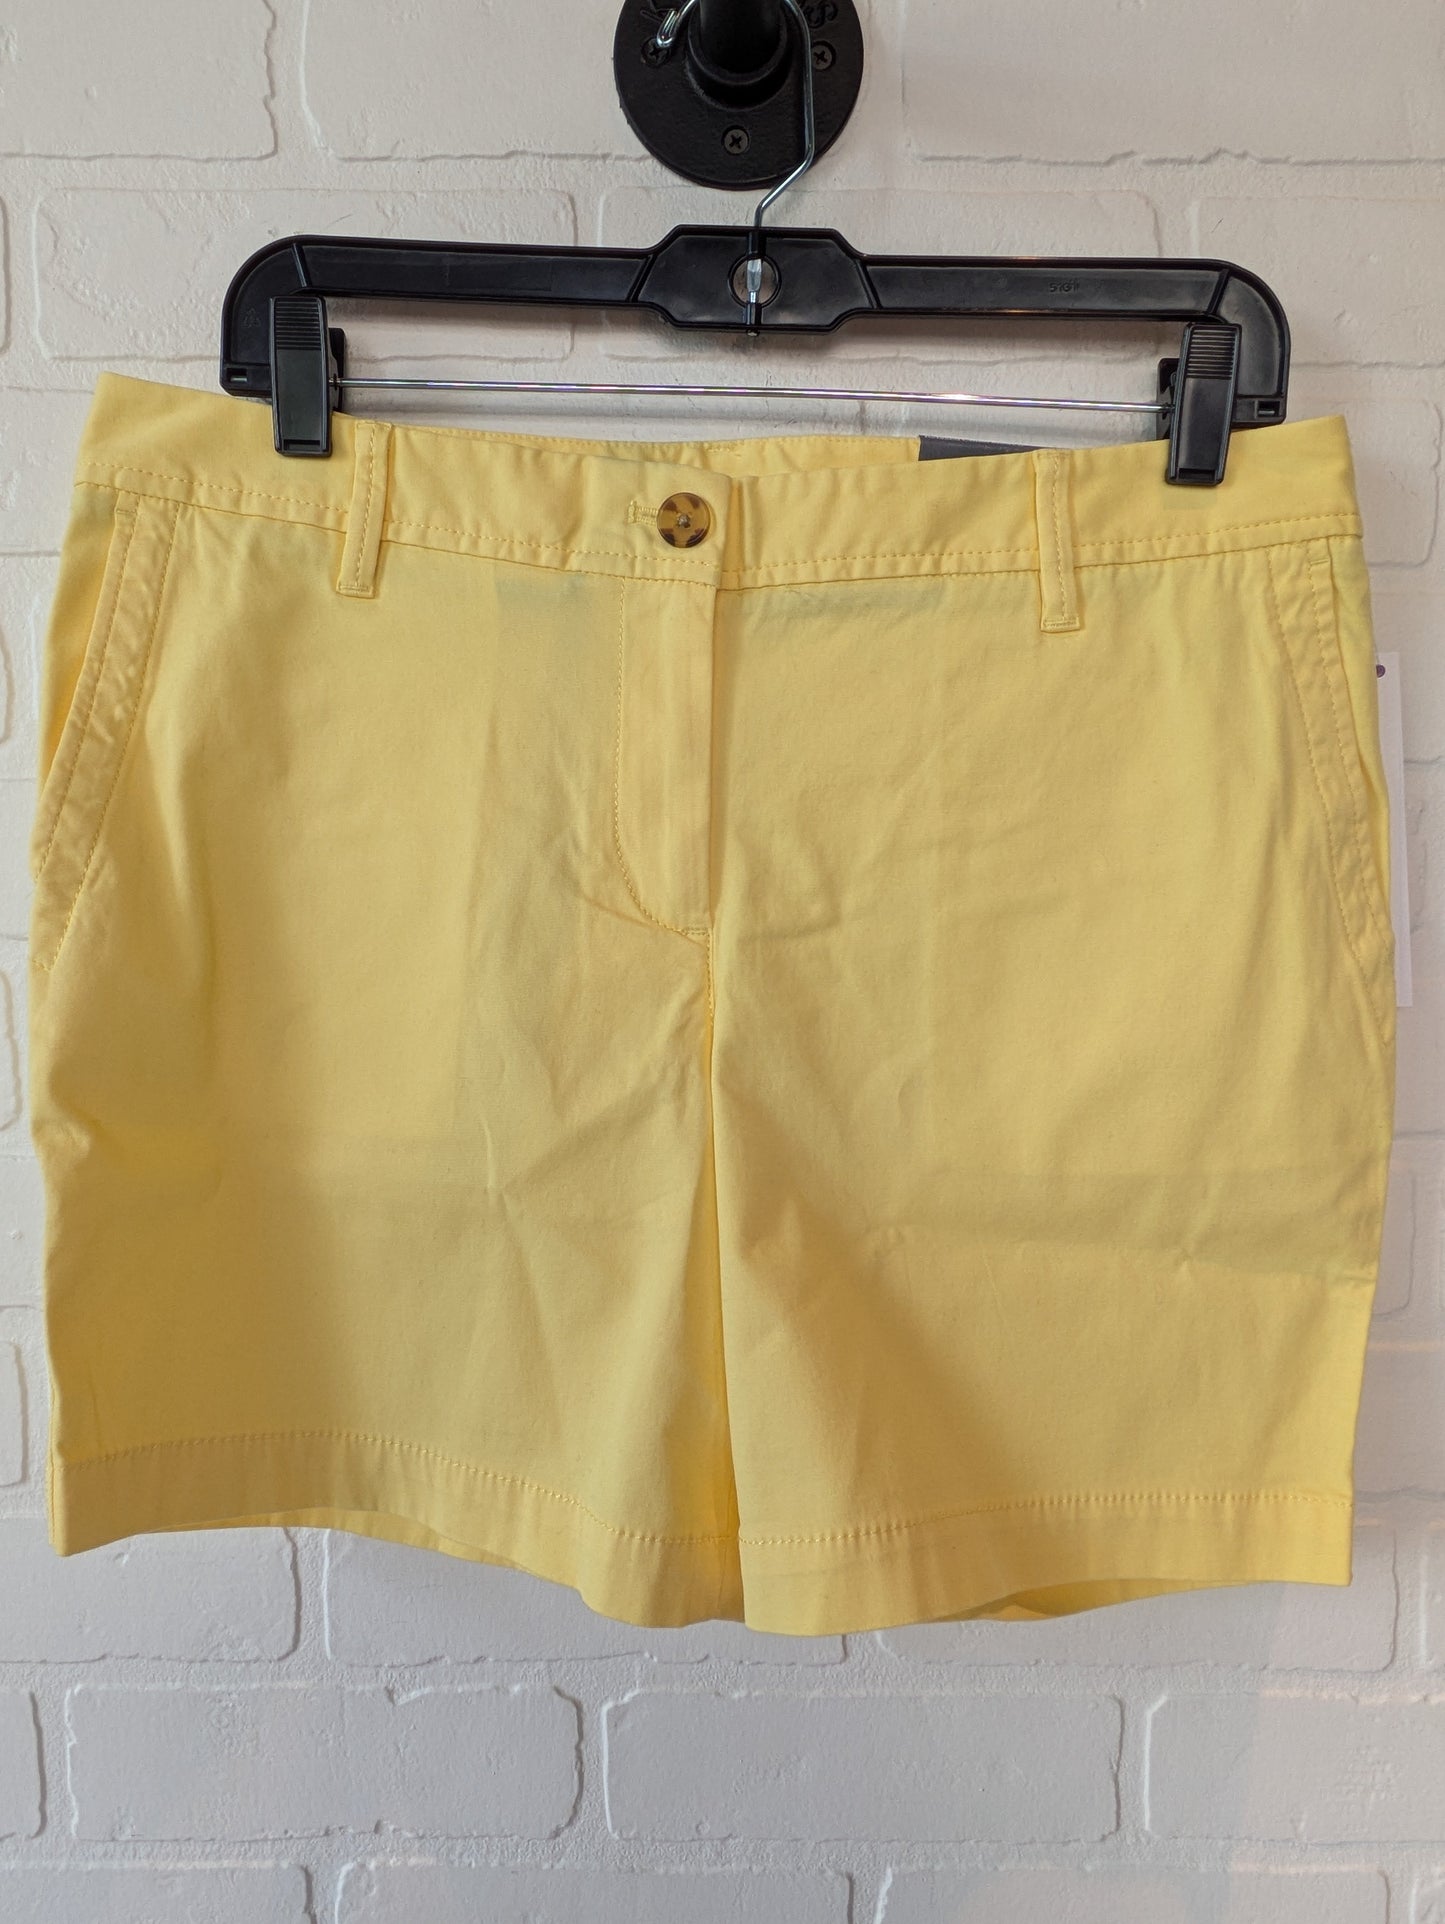 Yellow Shorts Talbots, Size 10petite